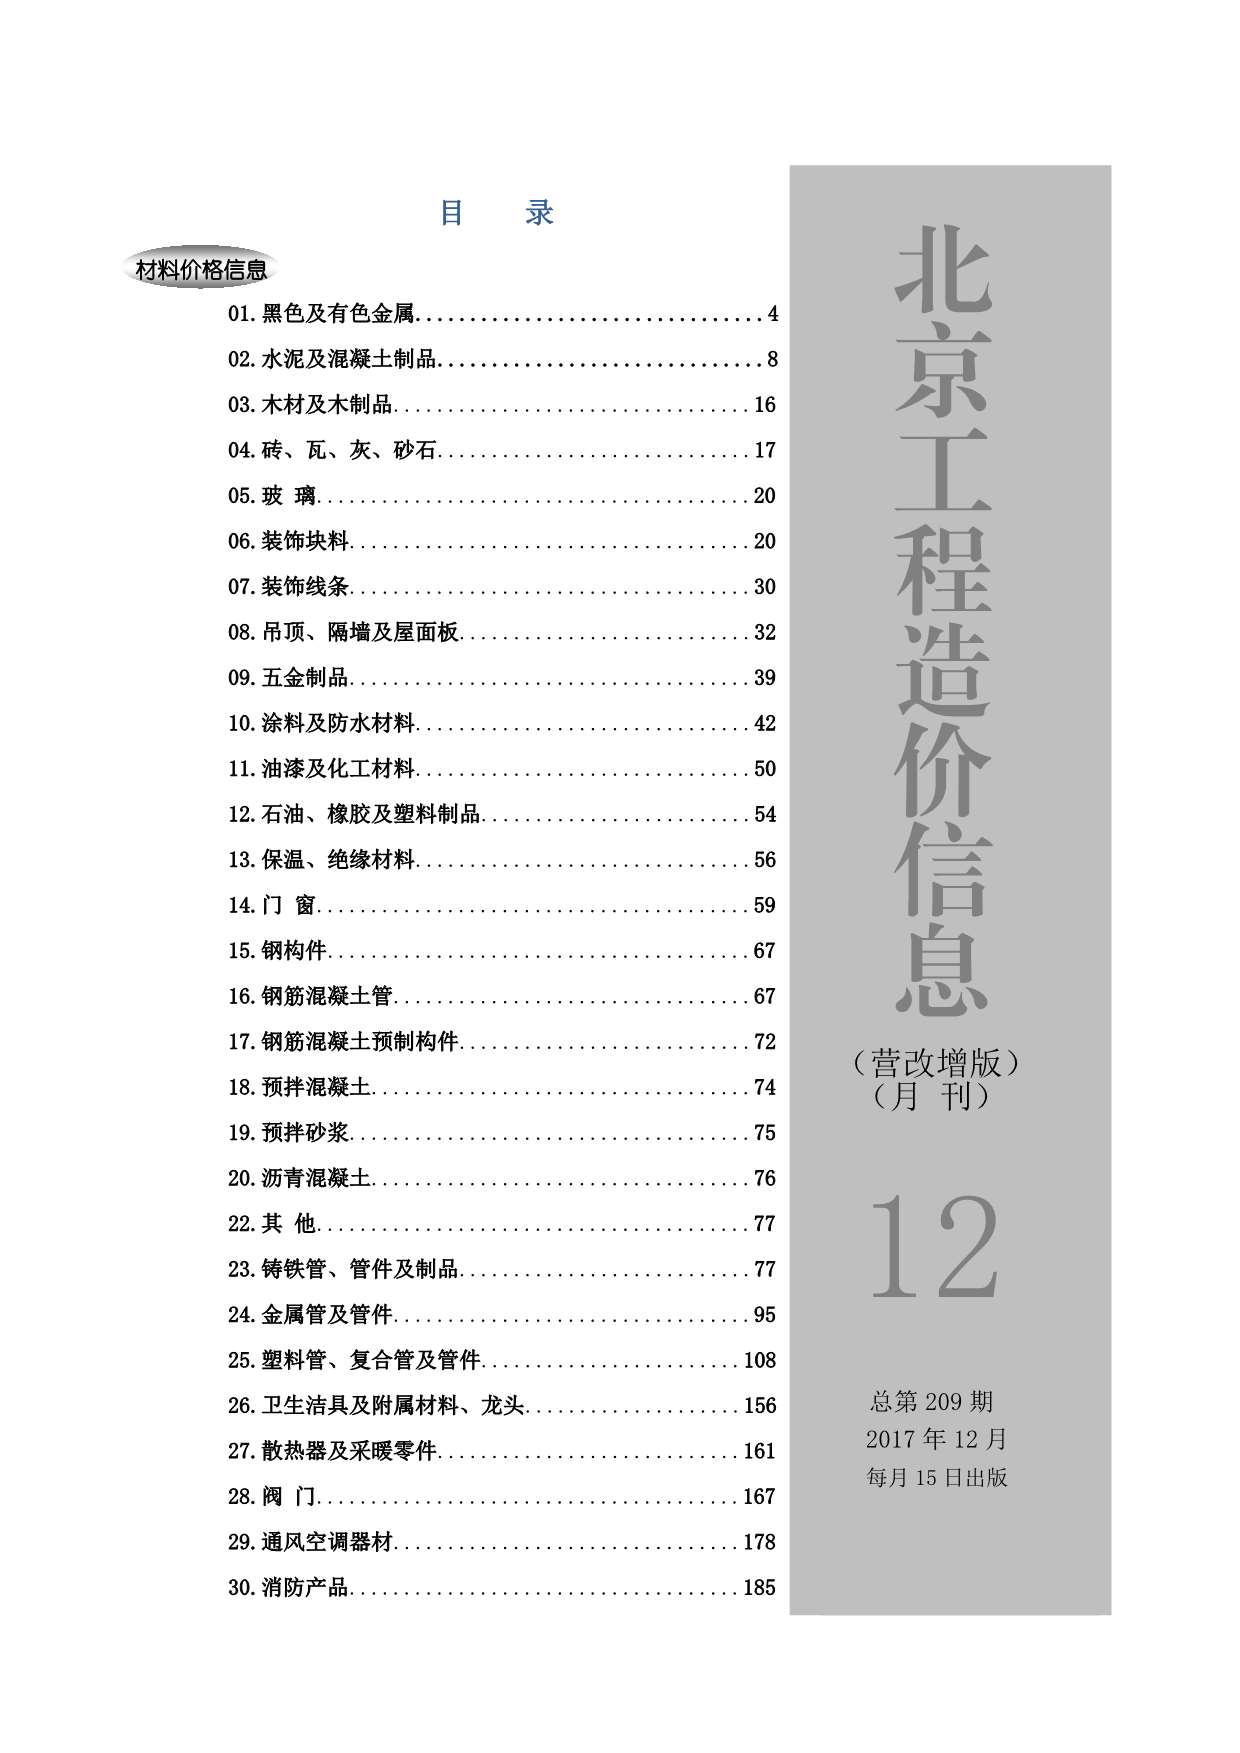 北京市2017年12月工程信息价_北京市信息价期刊PDF扫描件电子版